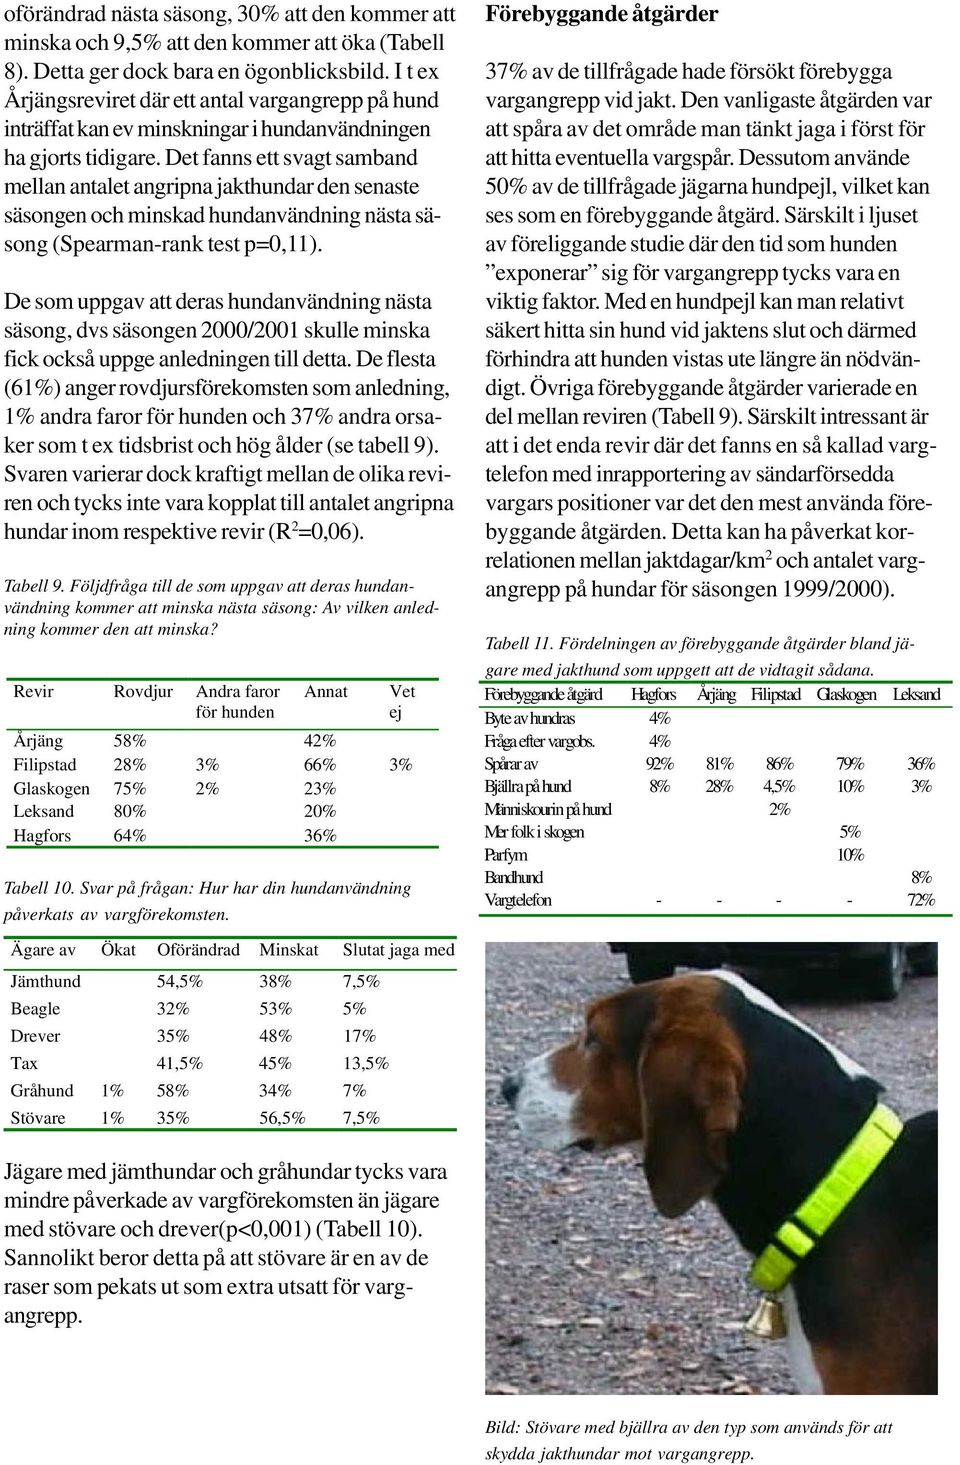 Det fanns ett svagt samband mellan antalet angripna jakthundar den senaste säsongen och minskad hundanvändning nästa säsong (Spearman-rank test p=0,11).